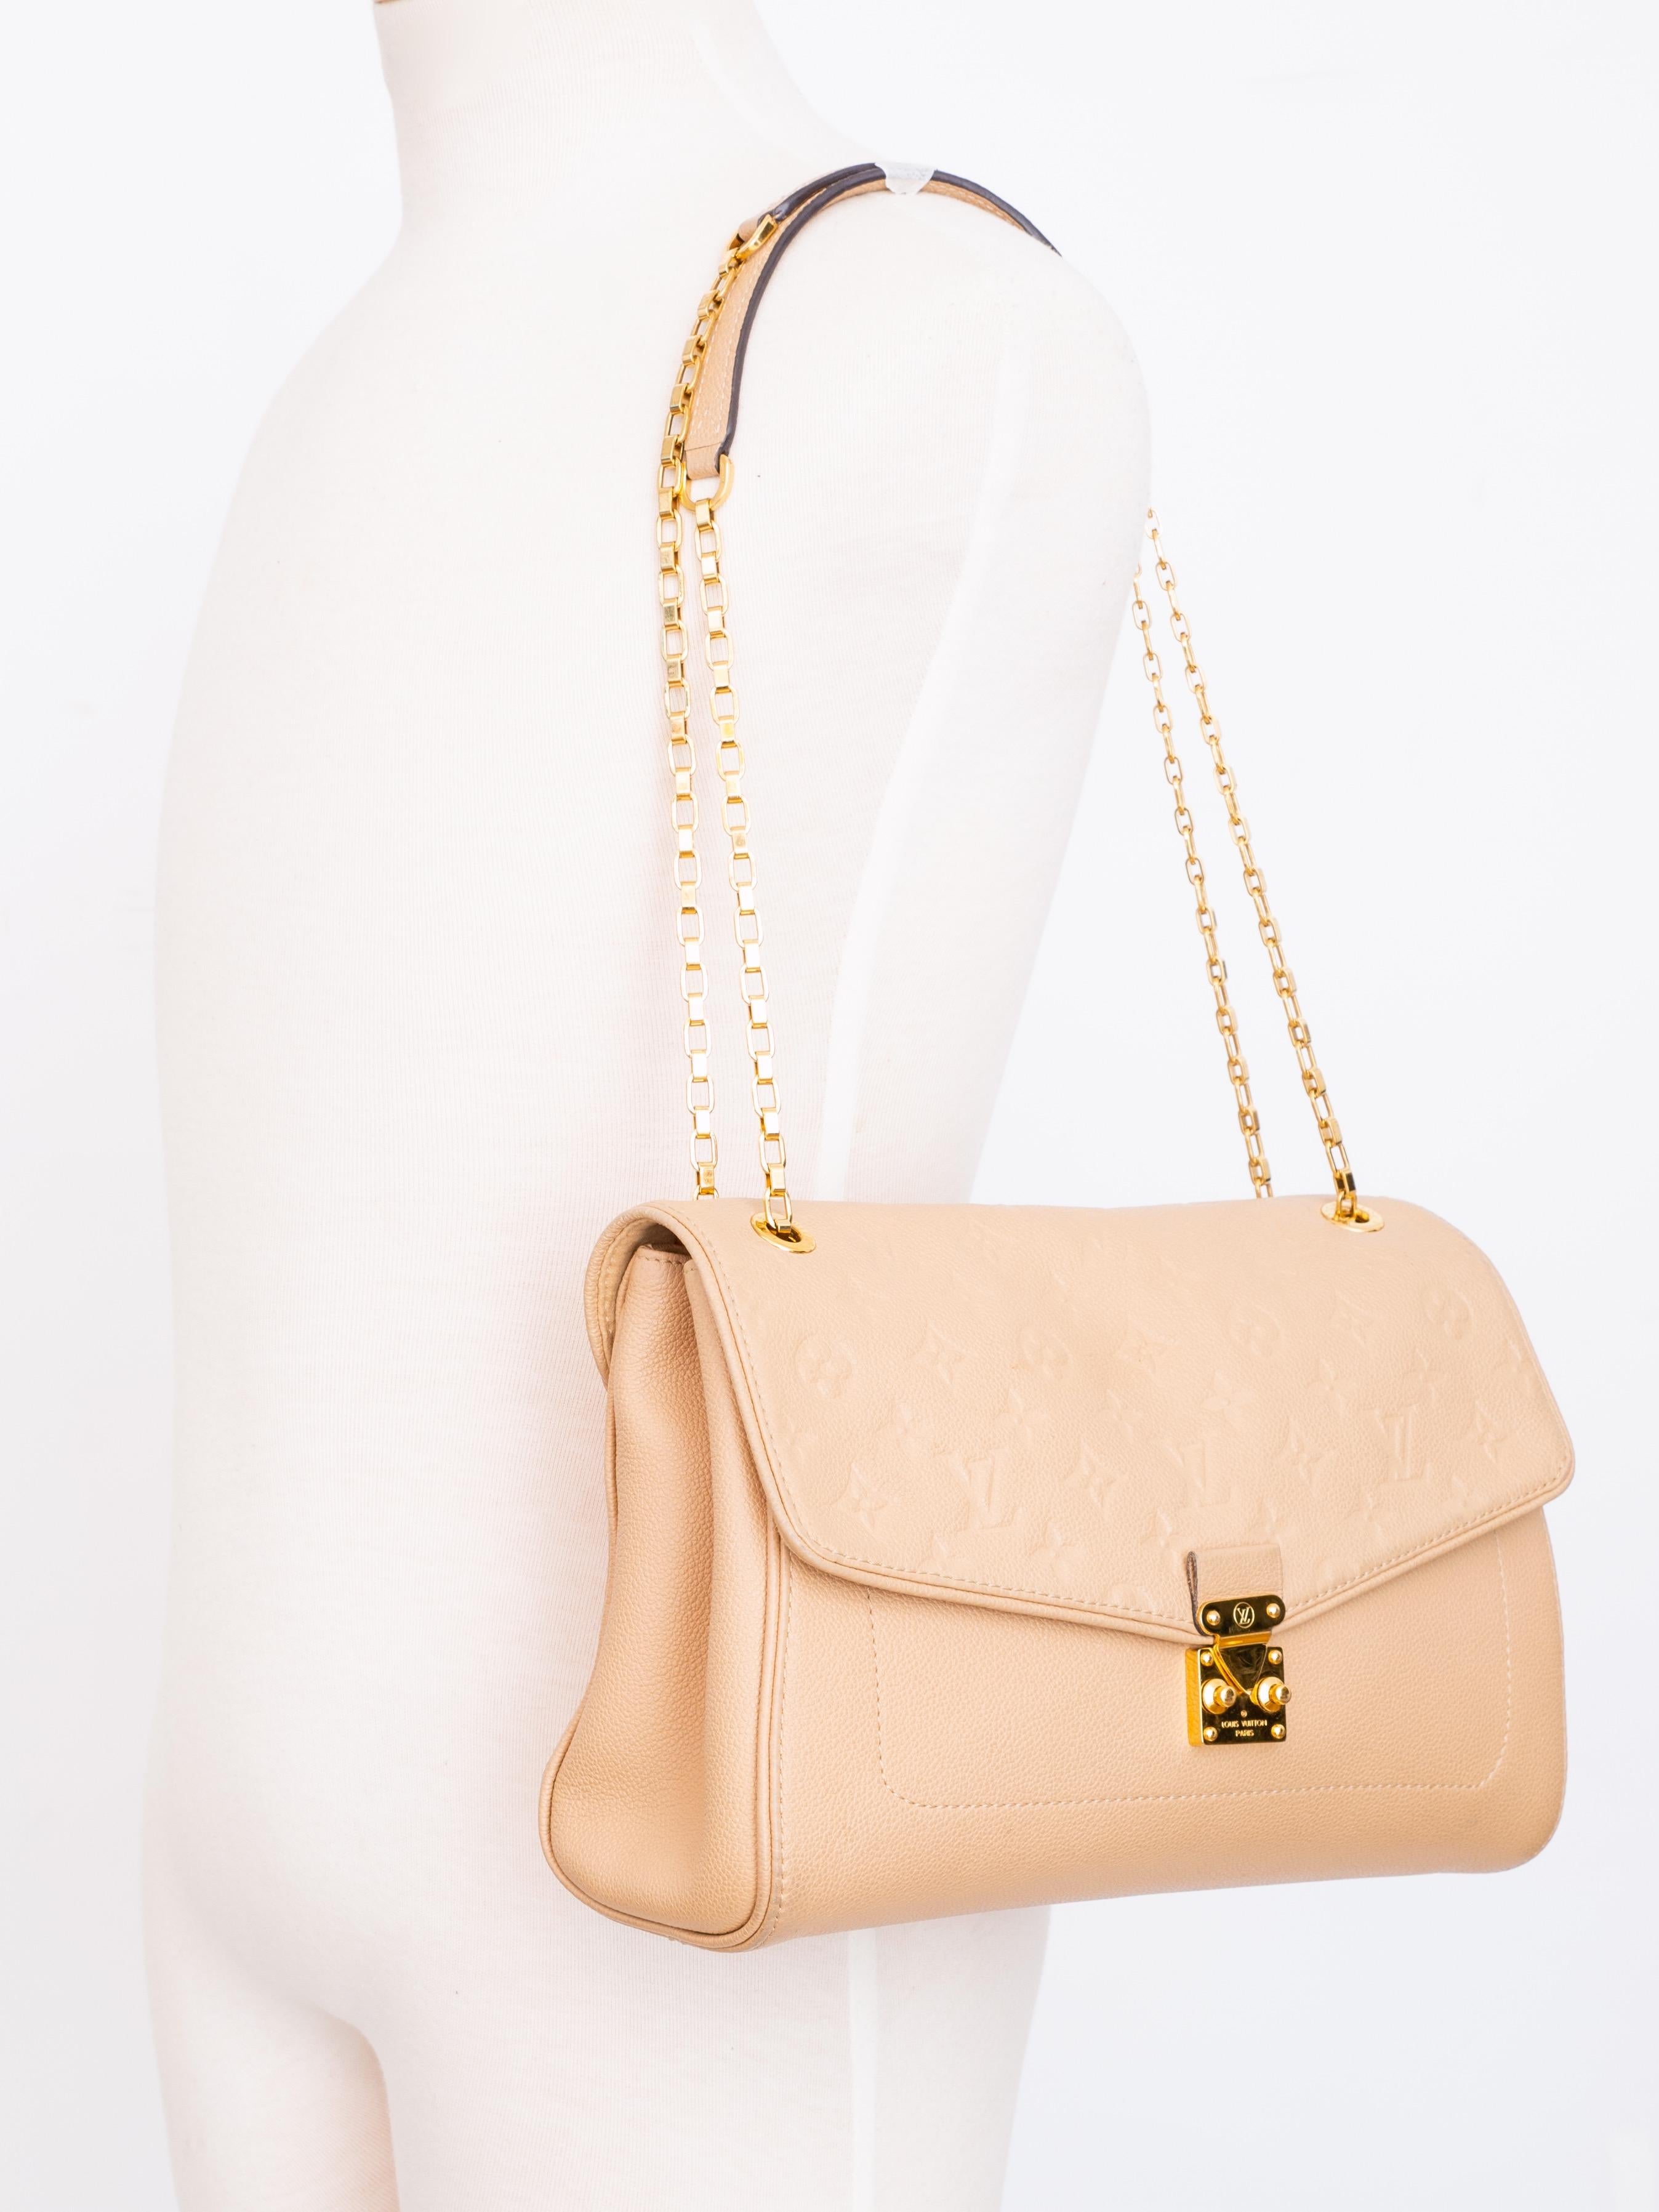 Louis Vuitton Empreinte Leather Dune St Germain MM Bag (2015) For Sale 1